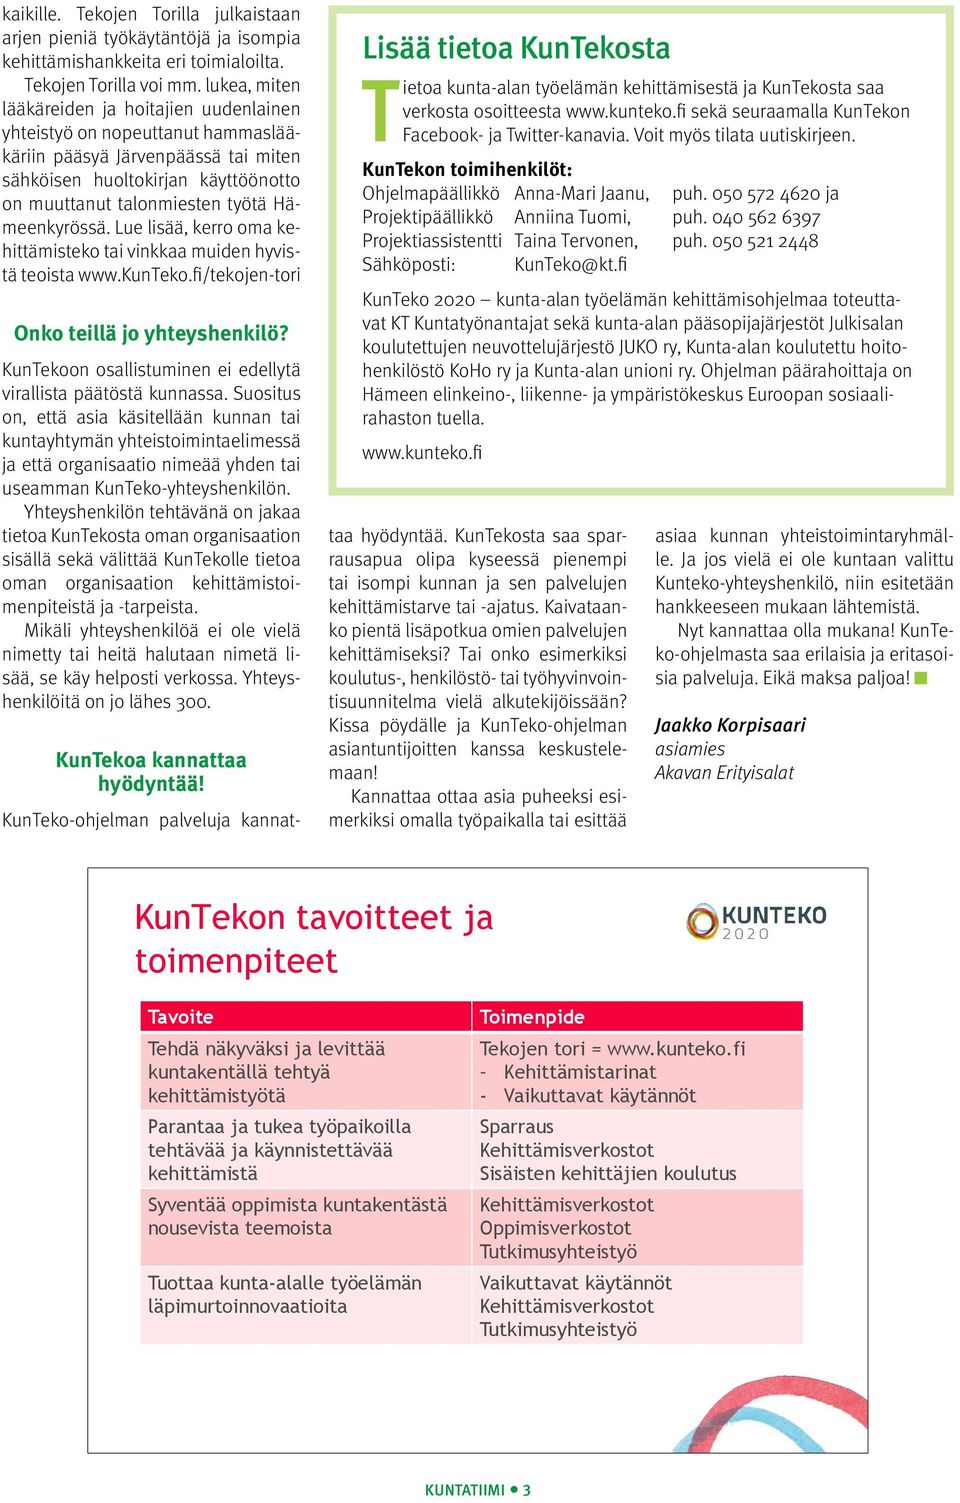 Hämeenkyrössä. Lue lisää, kerro oma kehittämisteko tai vinkkaa muiden hyvistä teoista www.kunteko.fi/tekojen-tori Onko teillä jo yhteyshenkilö?